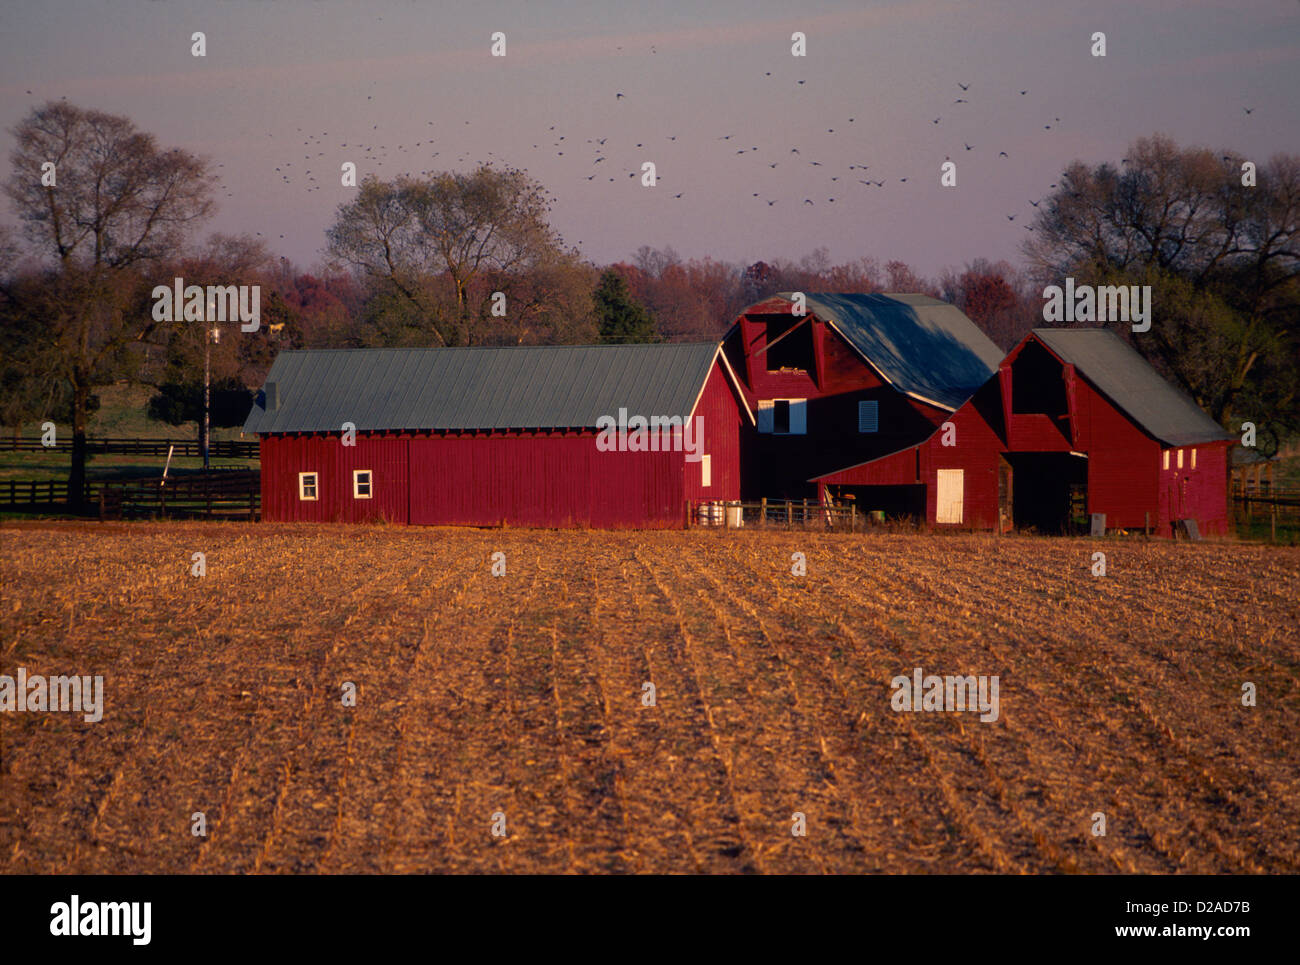 Virginie, Albemarle Comté. Scène de ferme, grange rouge entourée de champs de culture. Banque D'Images